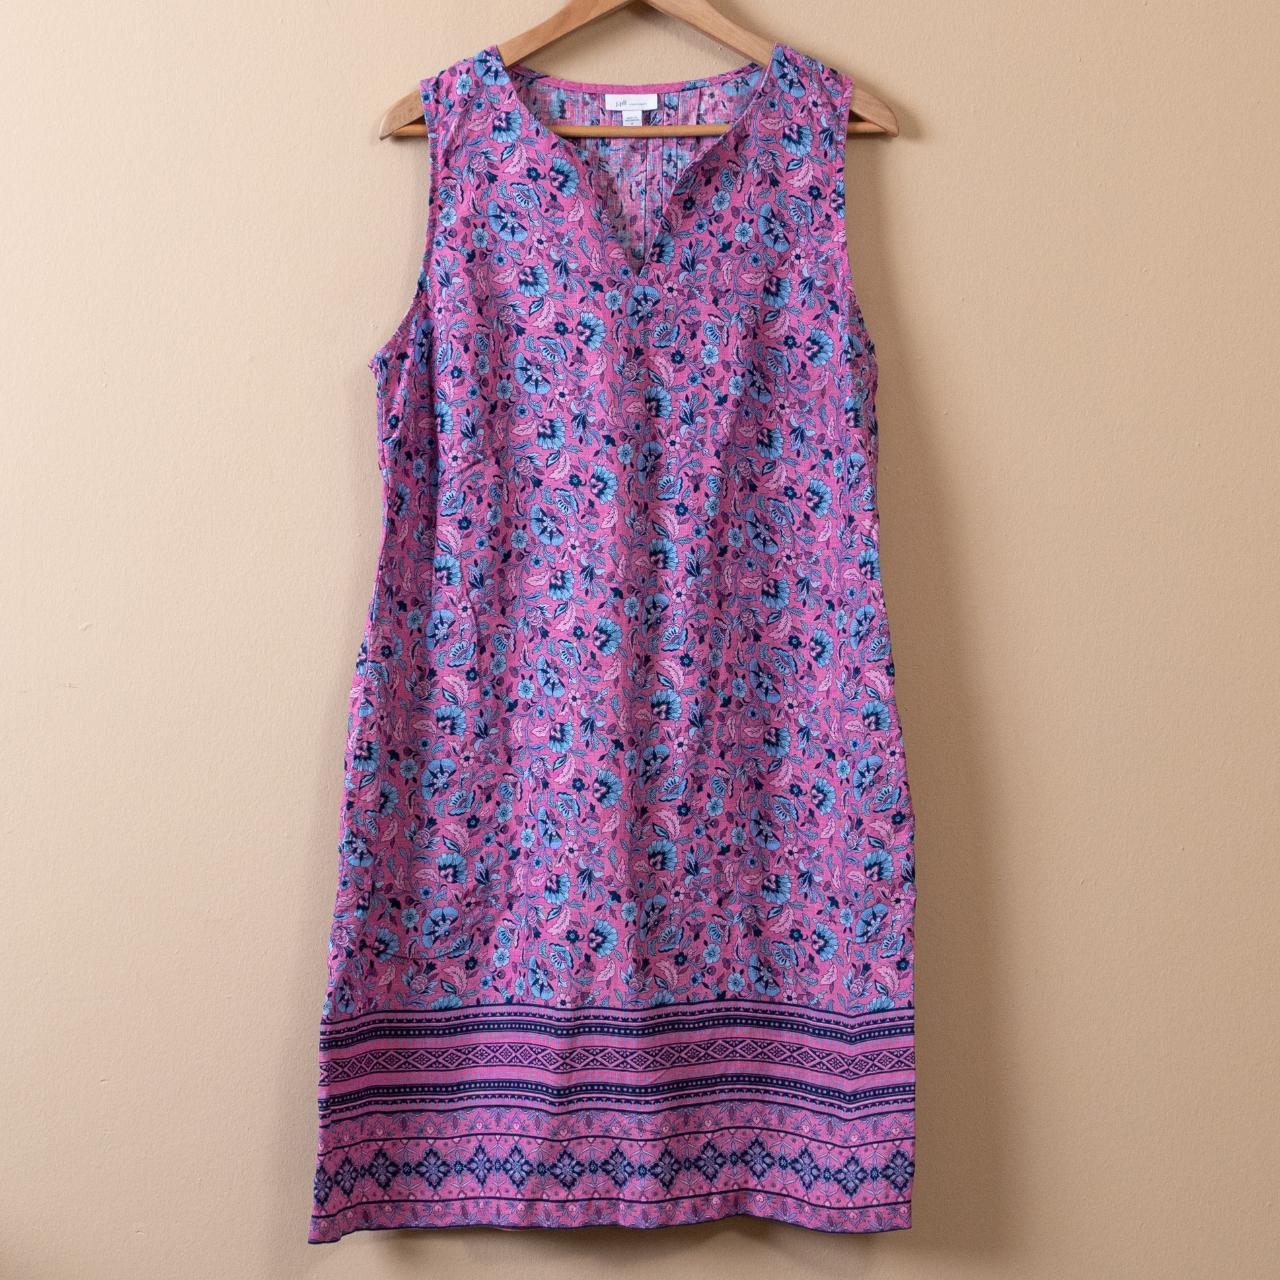 Lavender linen sleeveless dress by J. Jill. - Depop